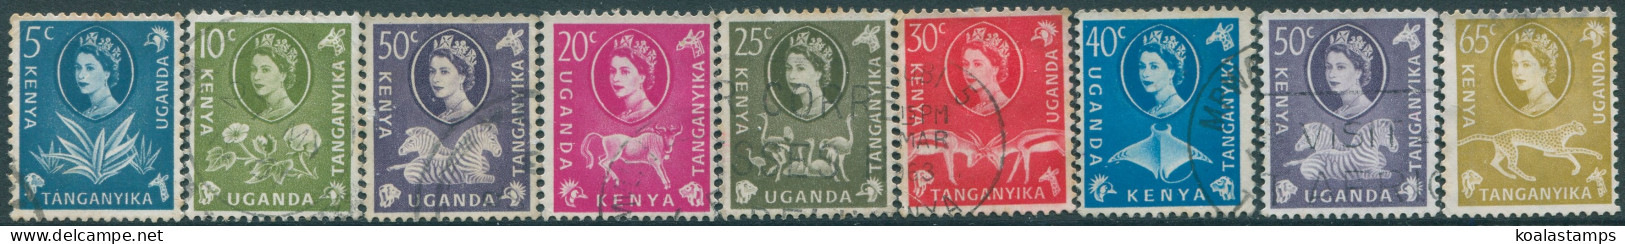 Kenya Uganda And Tanganyika 1960 SG183-191 QEII Wildlife And Plants (9) FU (amd) - Kenya, Oeganda & Tanganyika